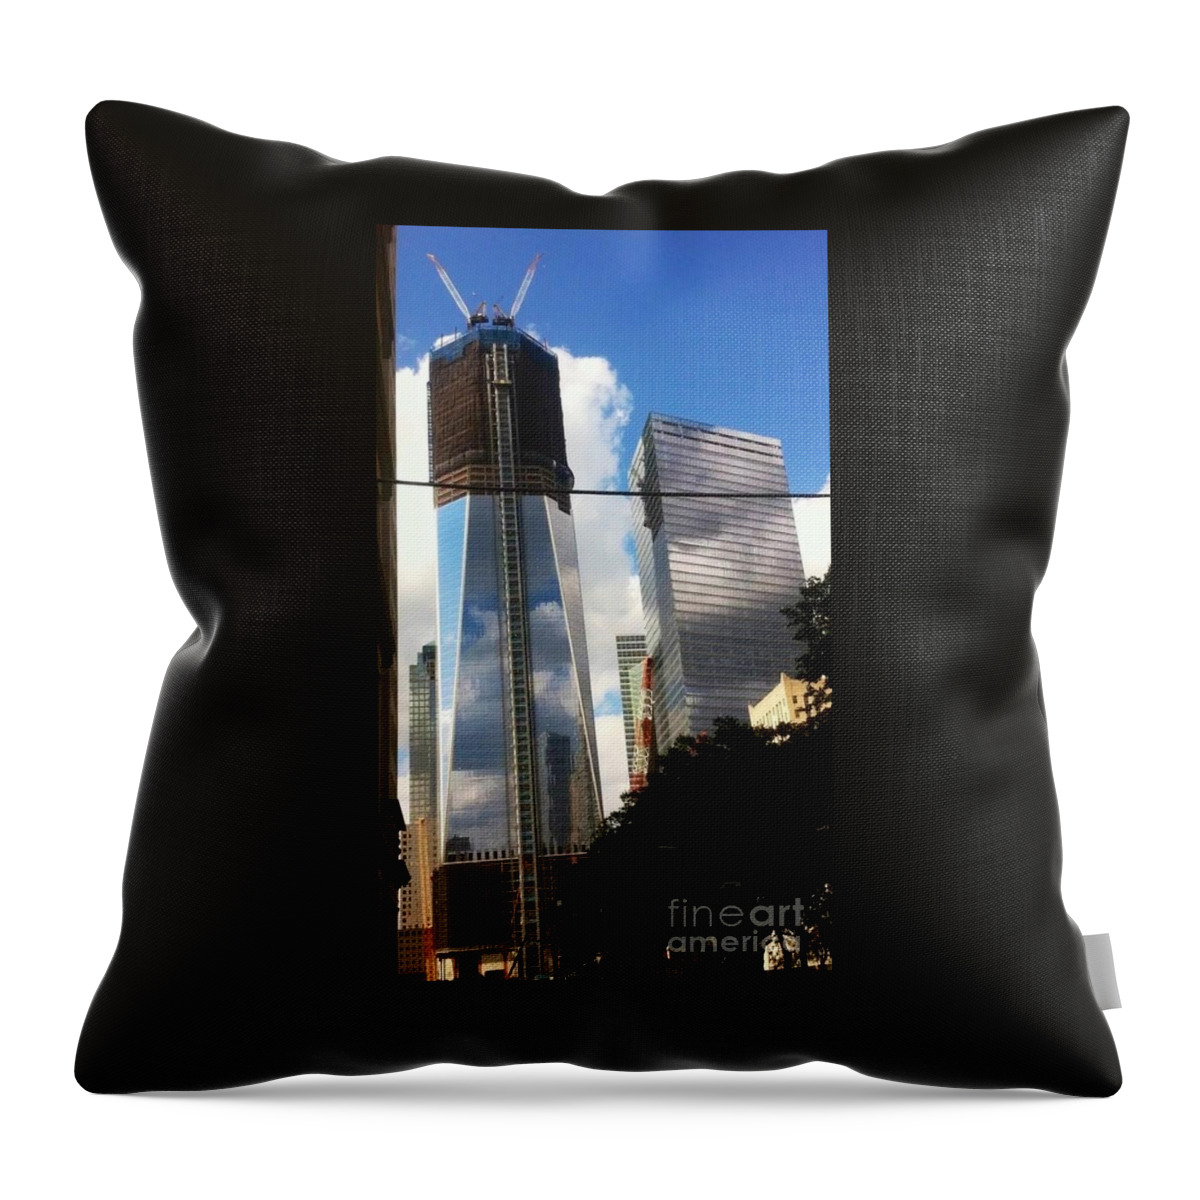 World Trade Center Throw Pillow featuring the photograph World Trade Center Twin Tower by Susan Garren